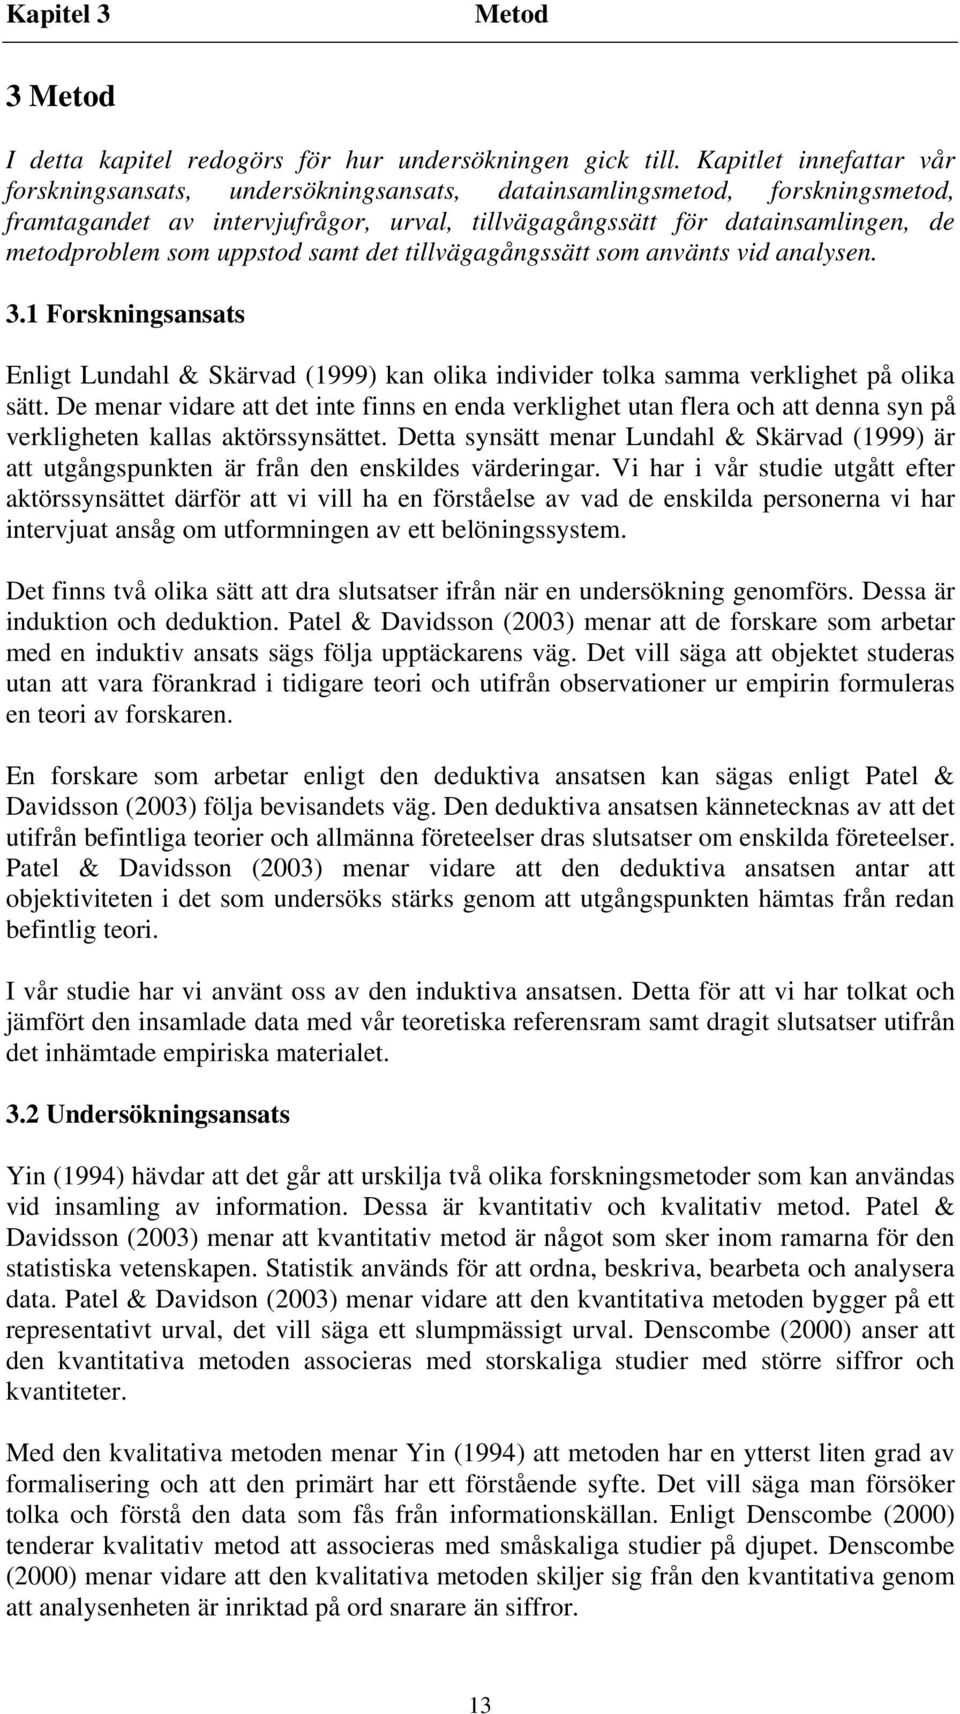 uppstod samt det tillvägagångssätt som använts vid analysen. 3.1 Forskningsansats Enligt Lundahl & Skärvad (1999) kan olika individer tolka samma verklighet på olika sätt.